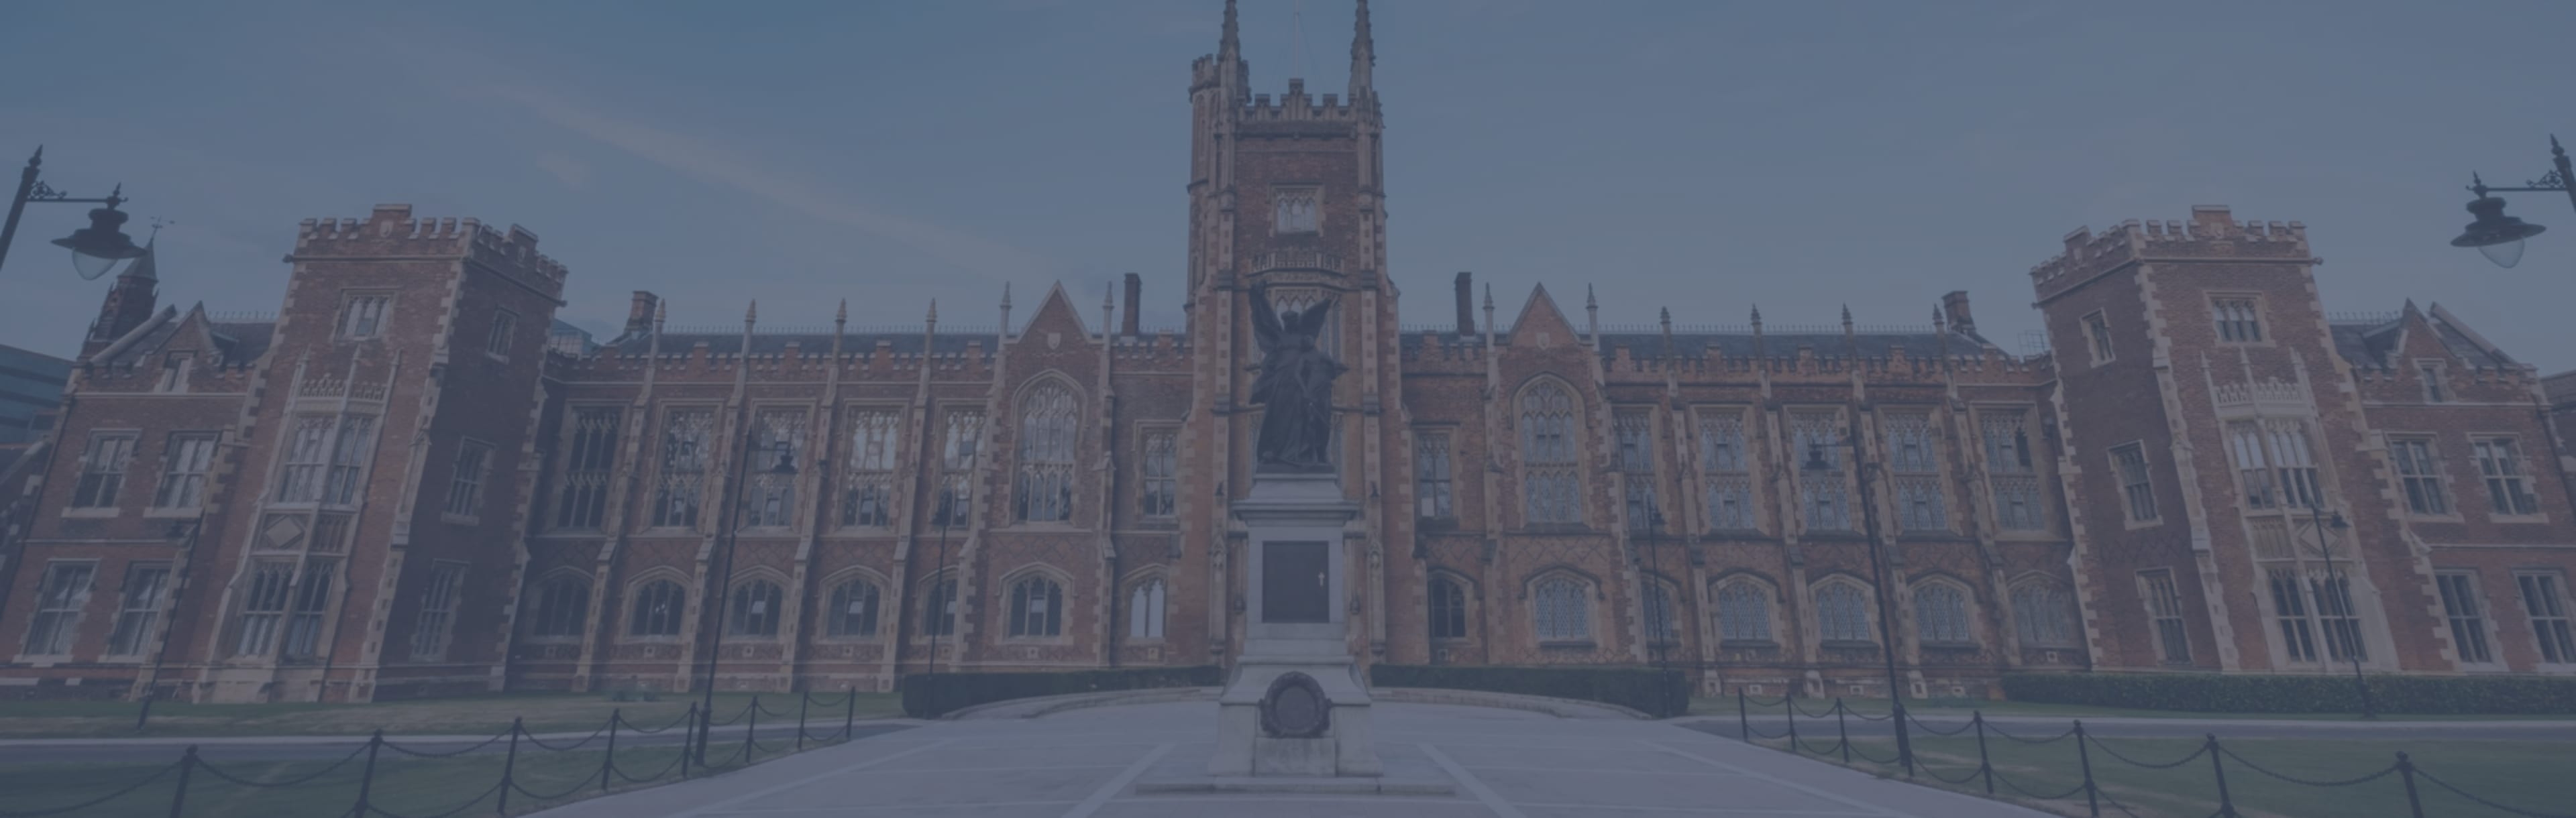 Queen's University Belfast - Faculty of Arts, Humanities and Social Sciences